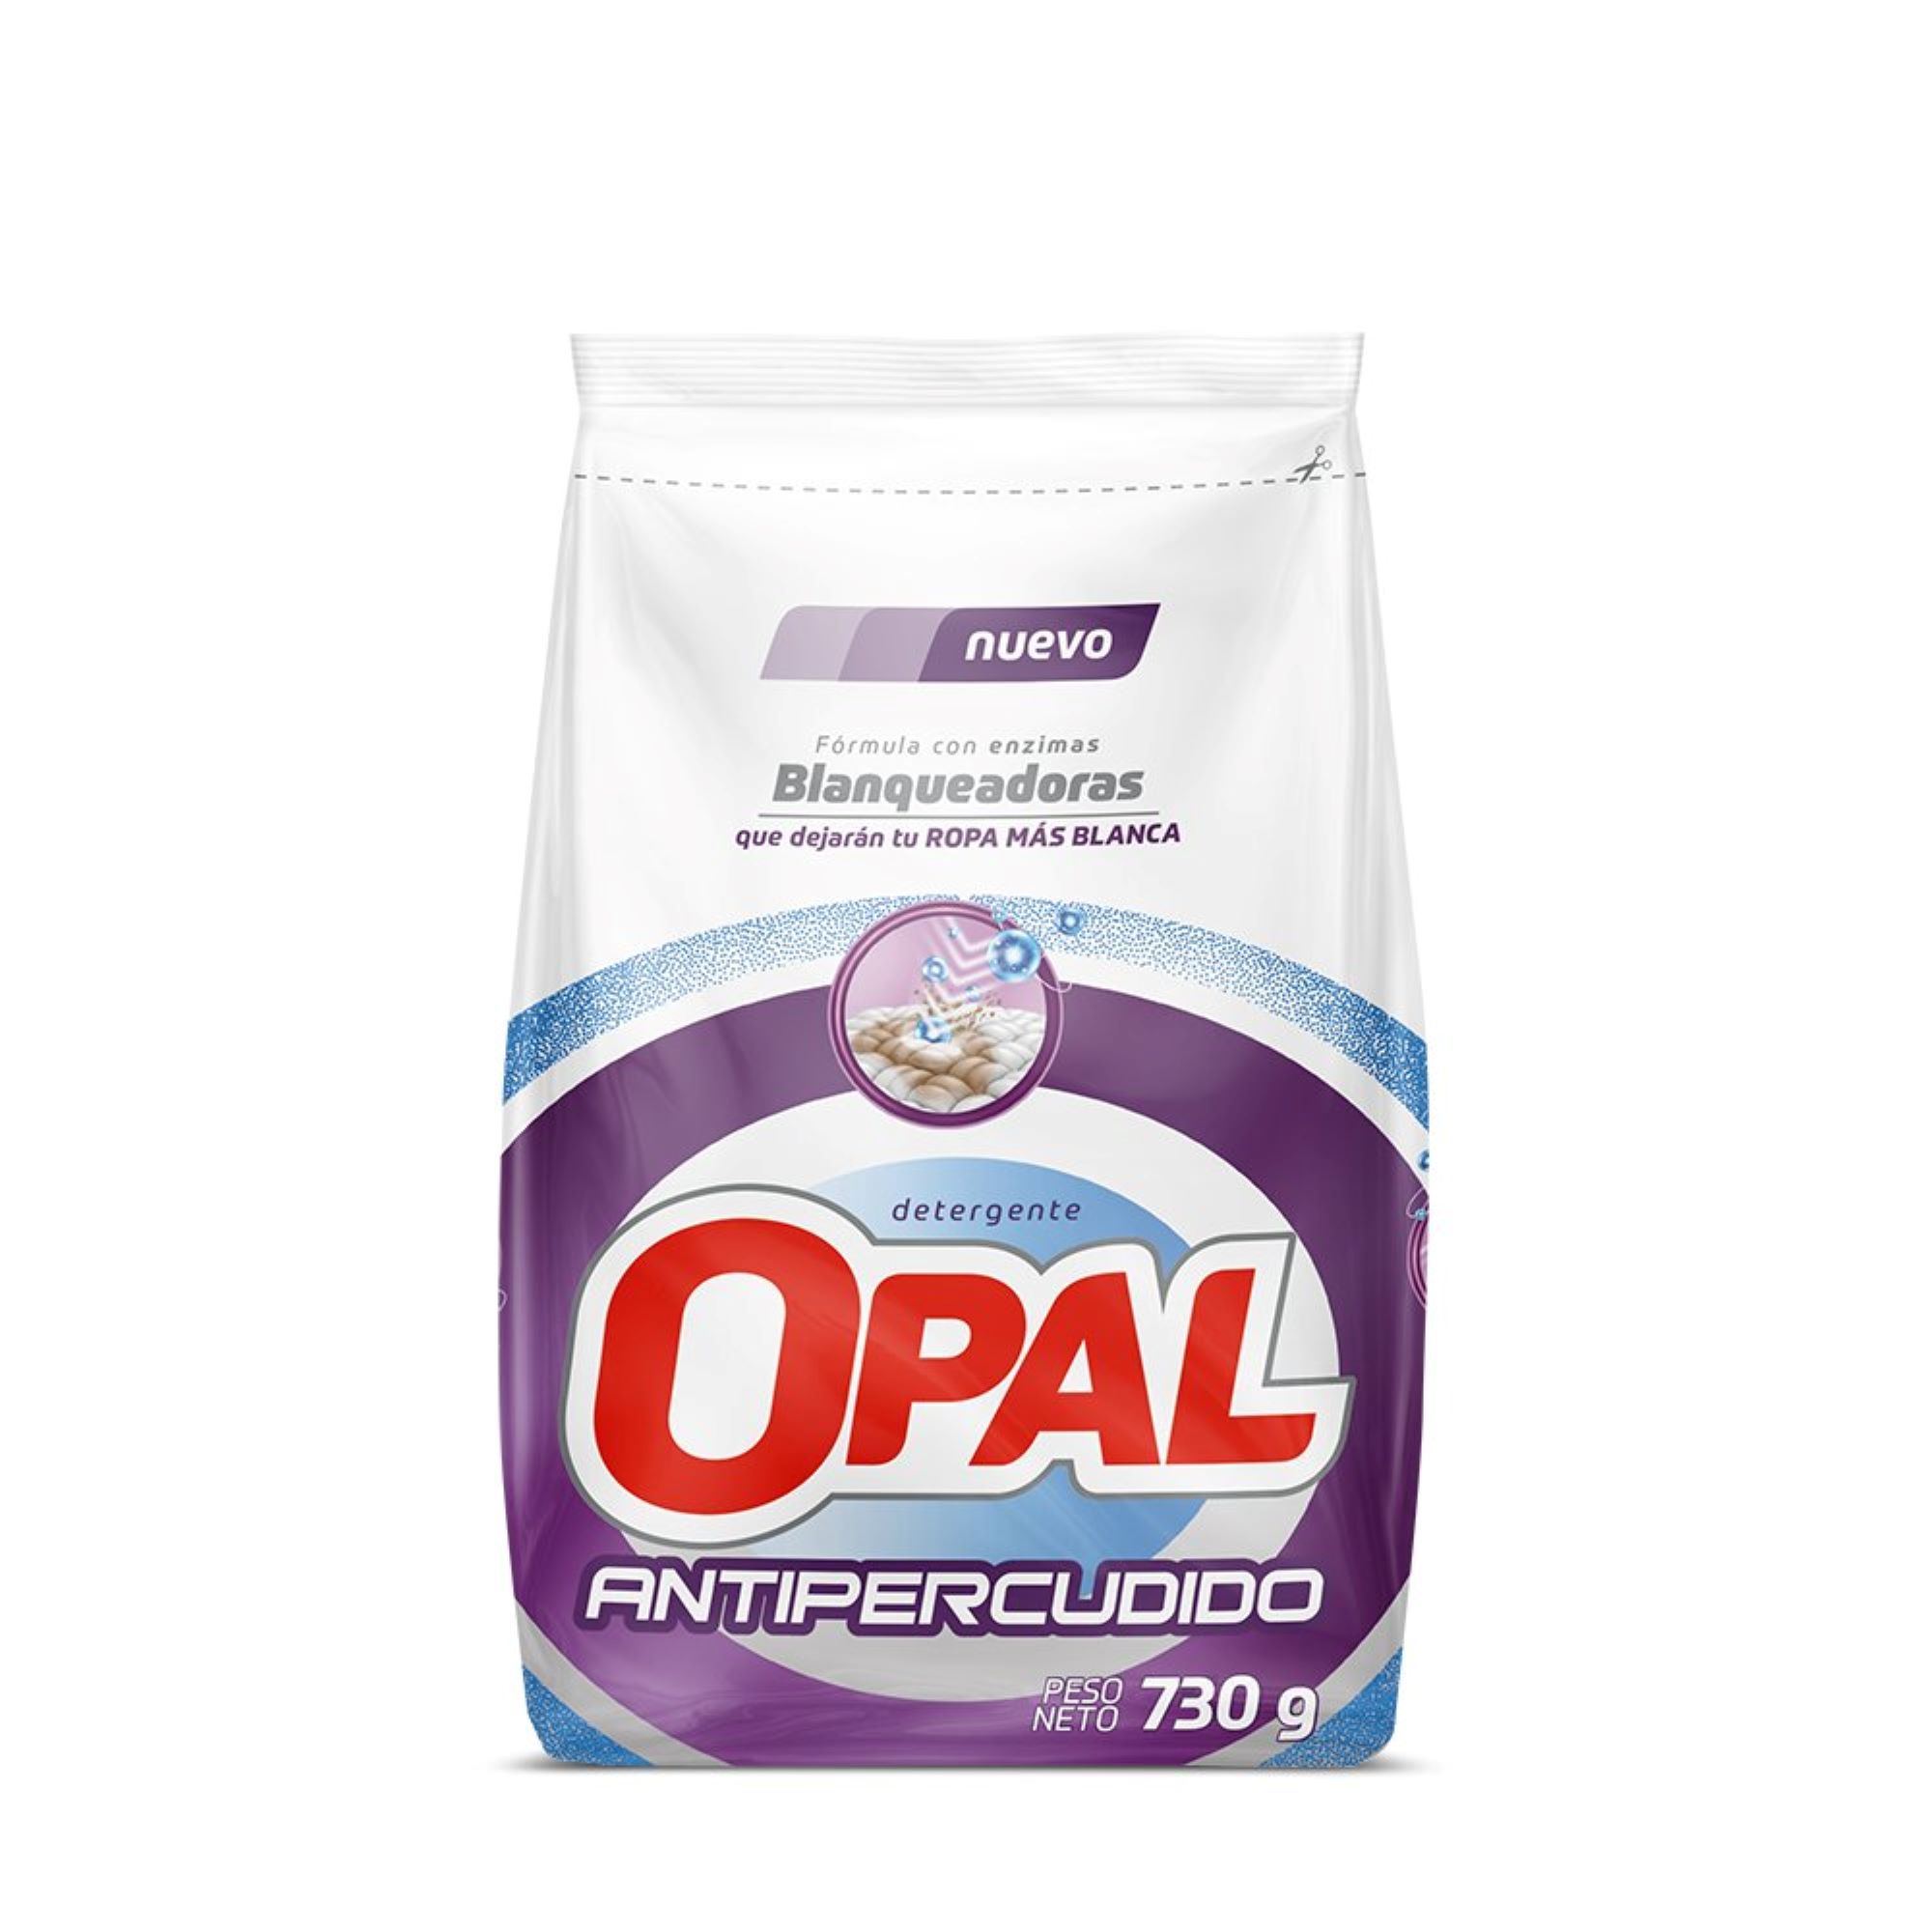 Detergente en Polvo Opal Antipercudido Bolsa 730g